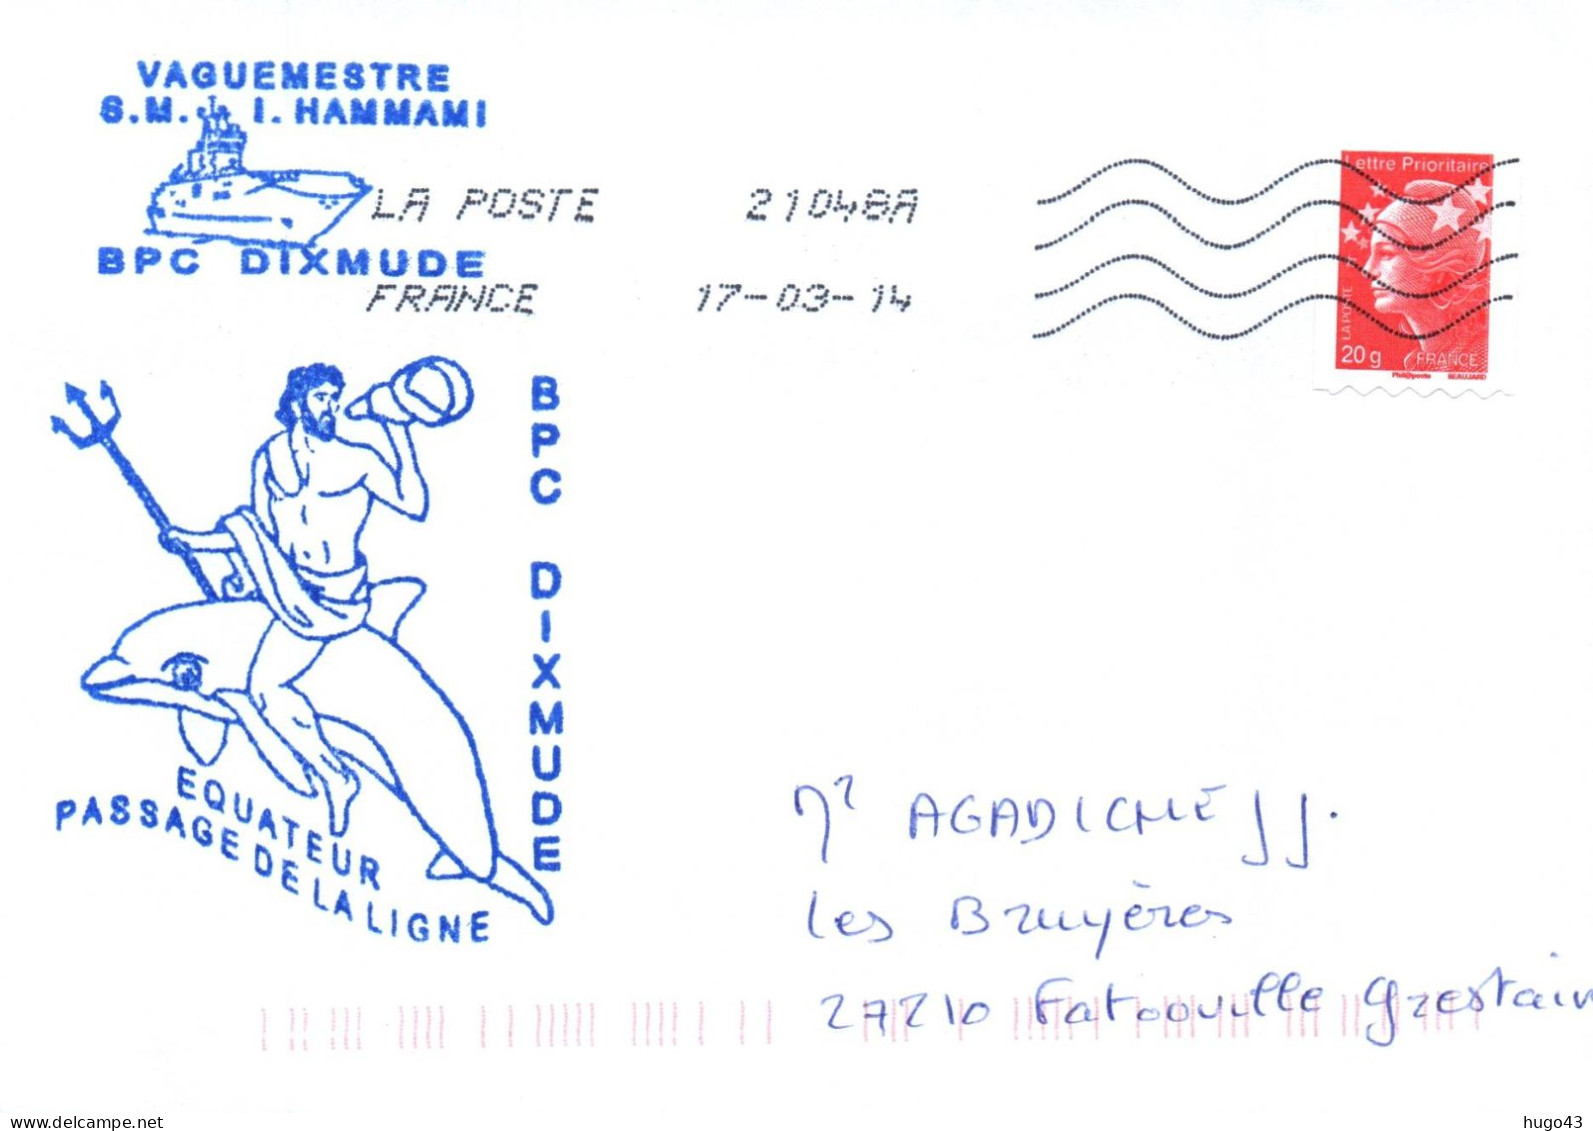 ENVELOPPE AVEC CACHET B.P.C. DIXMUDE - EQUATEUR - PASSAGE DE LA LIGNE - LE 17/03/14 - Seepost